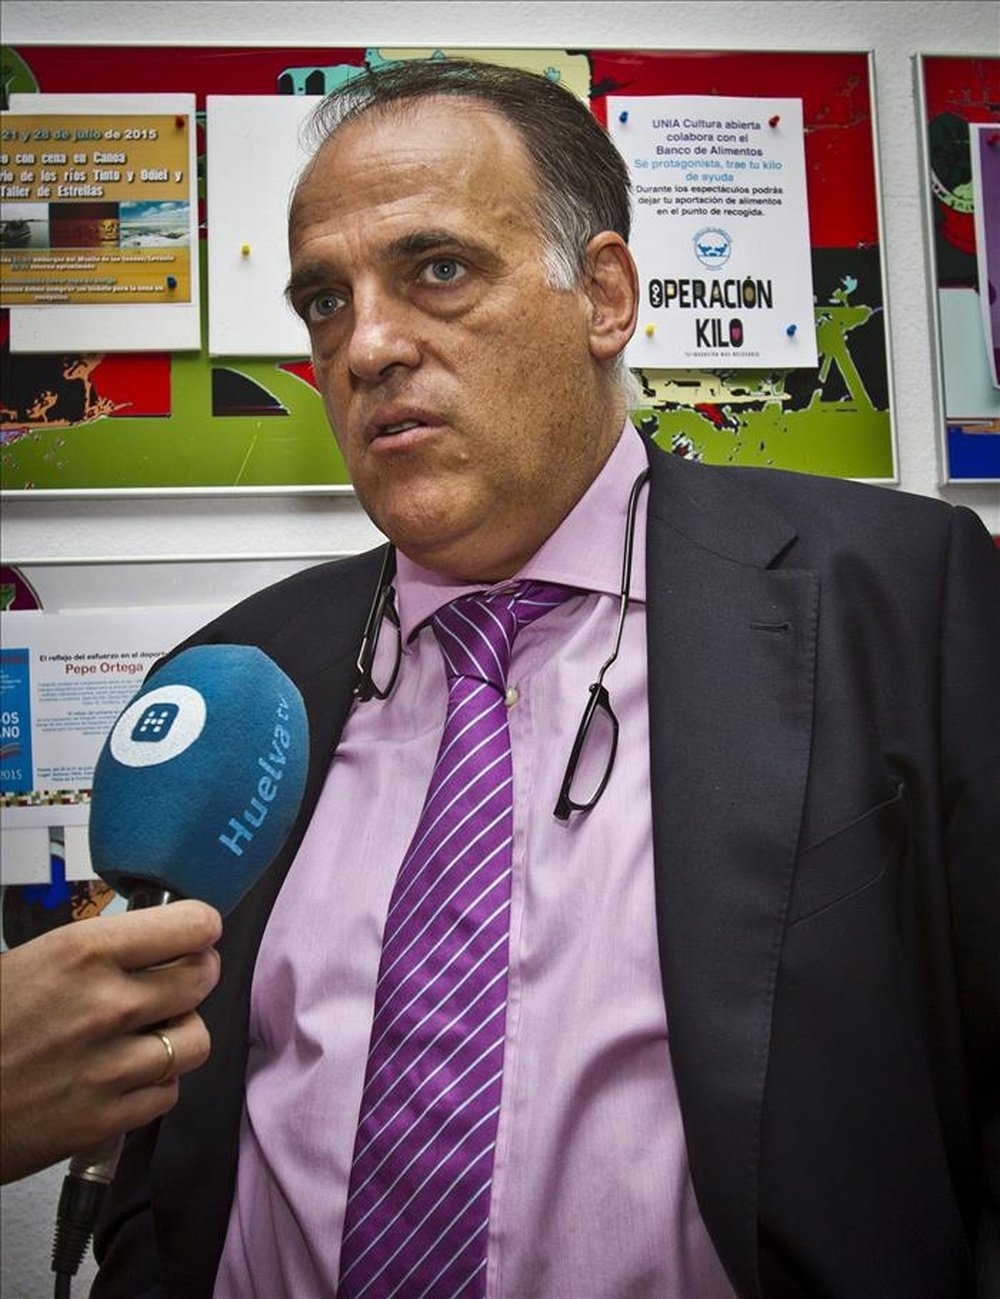 El presidente de la Liga de Fútbol Profesional (LFP), Javier Tebas, realiza declaraciones a la prensa antes de participar en el curso 'Juego limpio y violencia en el deporte' organizado por la Universidad Internacional de Andalucía (UNIA), en La Rábida (Huelva). EFE 